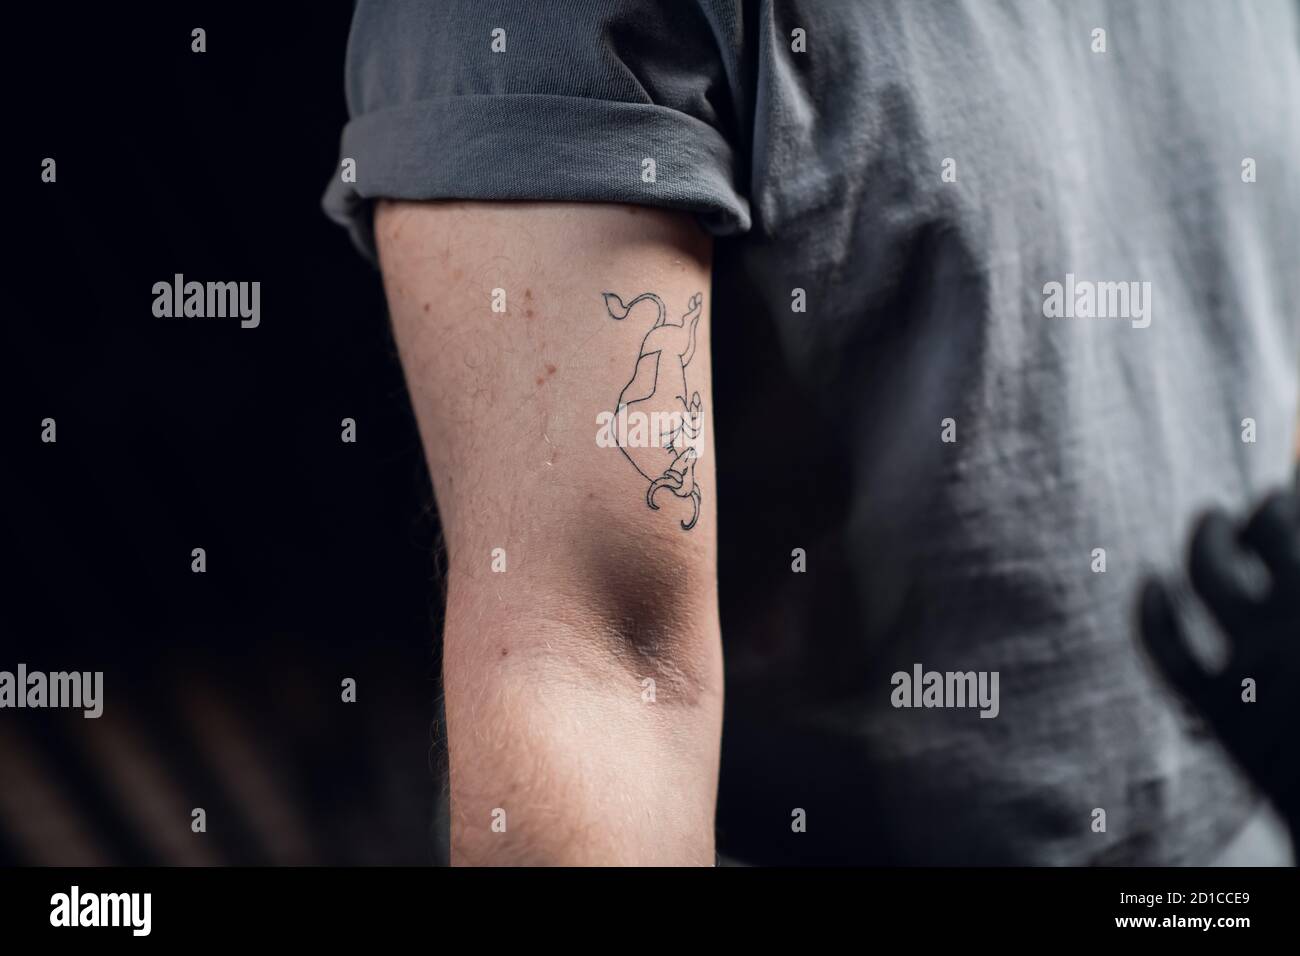 Skizze eines Stier-Tattoos, das in einem grauen T-Shirt auf den Bizeps  eines Männerarms übertragen wurde. Vorbereitung für den Tätowierungsprozess  Stockfotografie - Alamy